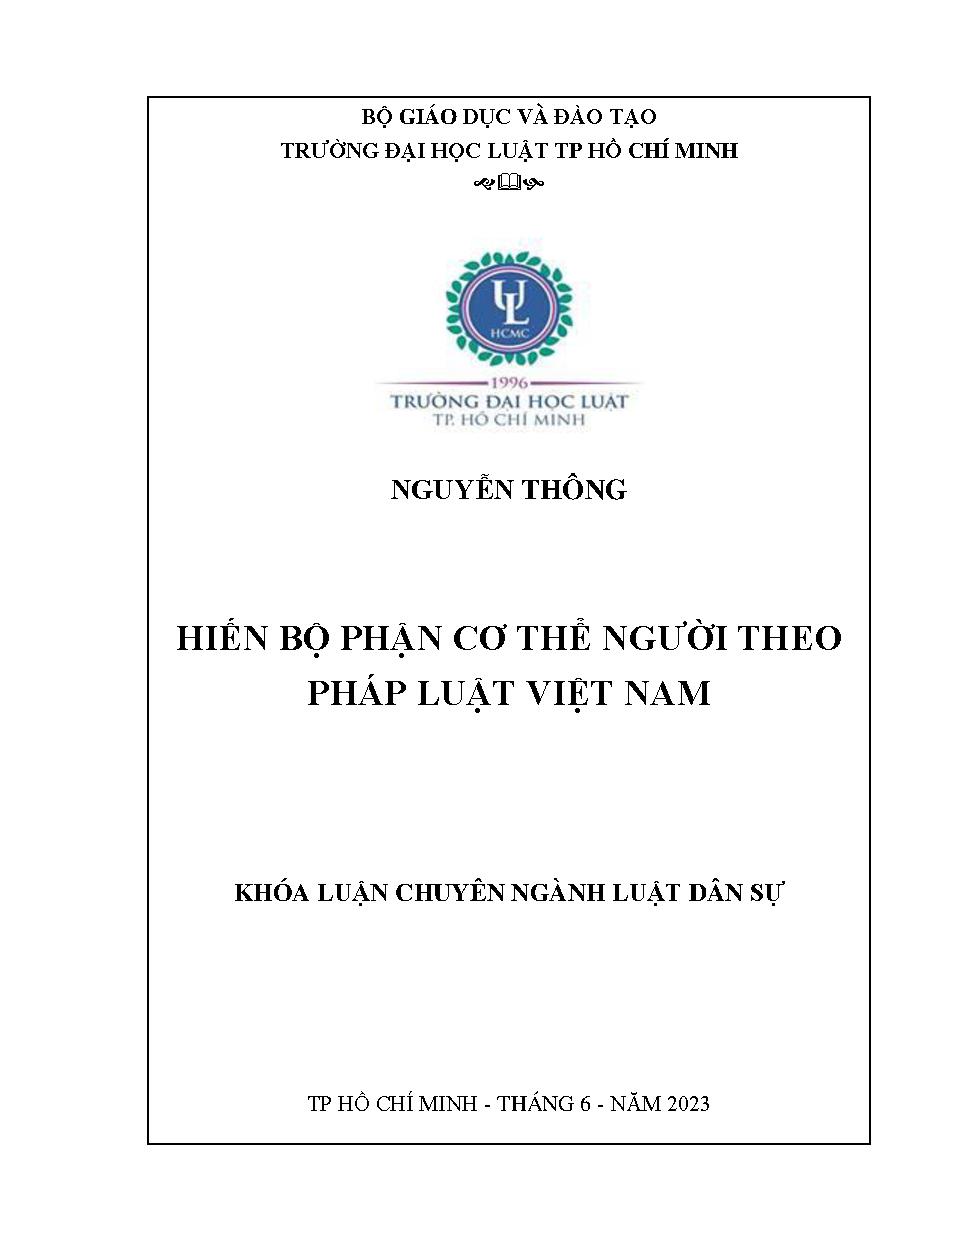 Hiến bộ phận cơ thể người theo pháp luật Việt Nam